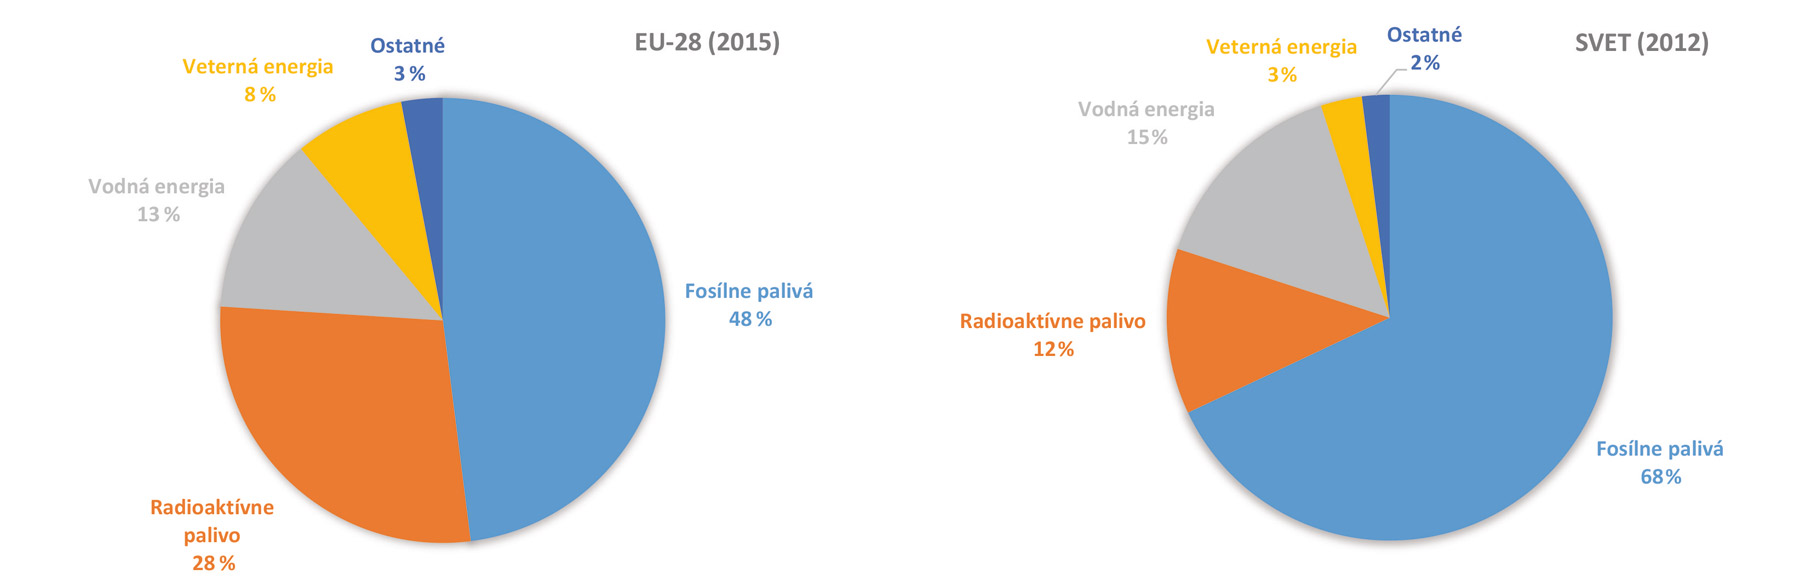 Obr. 2 Produkcia elektrickej energie podľa energetického nosiča EÚ 28 (vľavo) [6], svet (vpravo) [7]